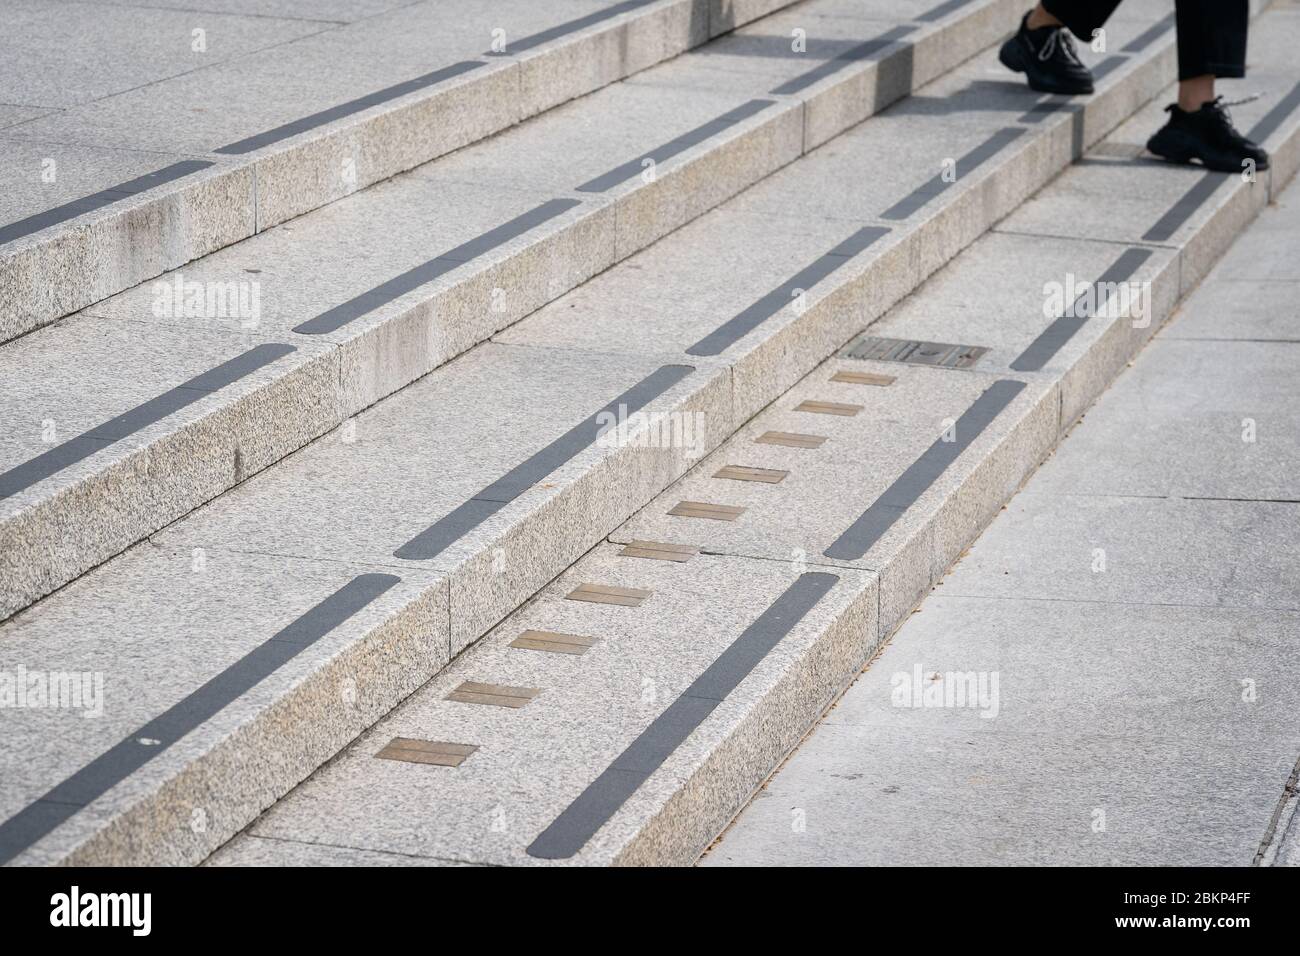 Una persona passa i marcatori di misurazione imperiali incorporati sui gradini che portano alla National Portrait Gallery a Trafalgar Square a Londra mentre il Regno Unito continua a bloccarsi per contribuire a frenare la diffusione del coronavirus. Foto Stock